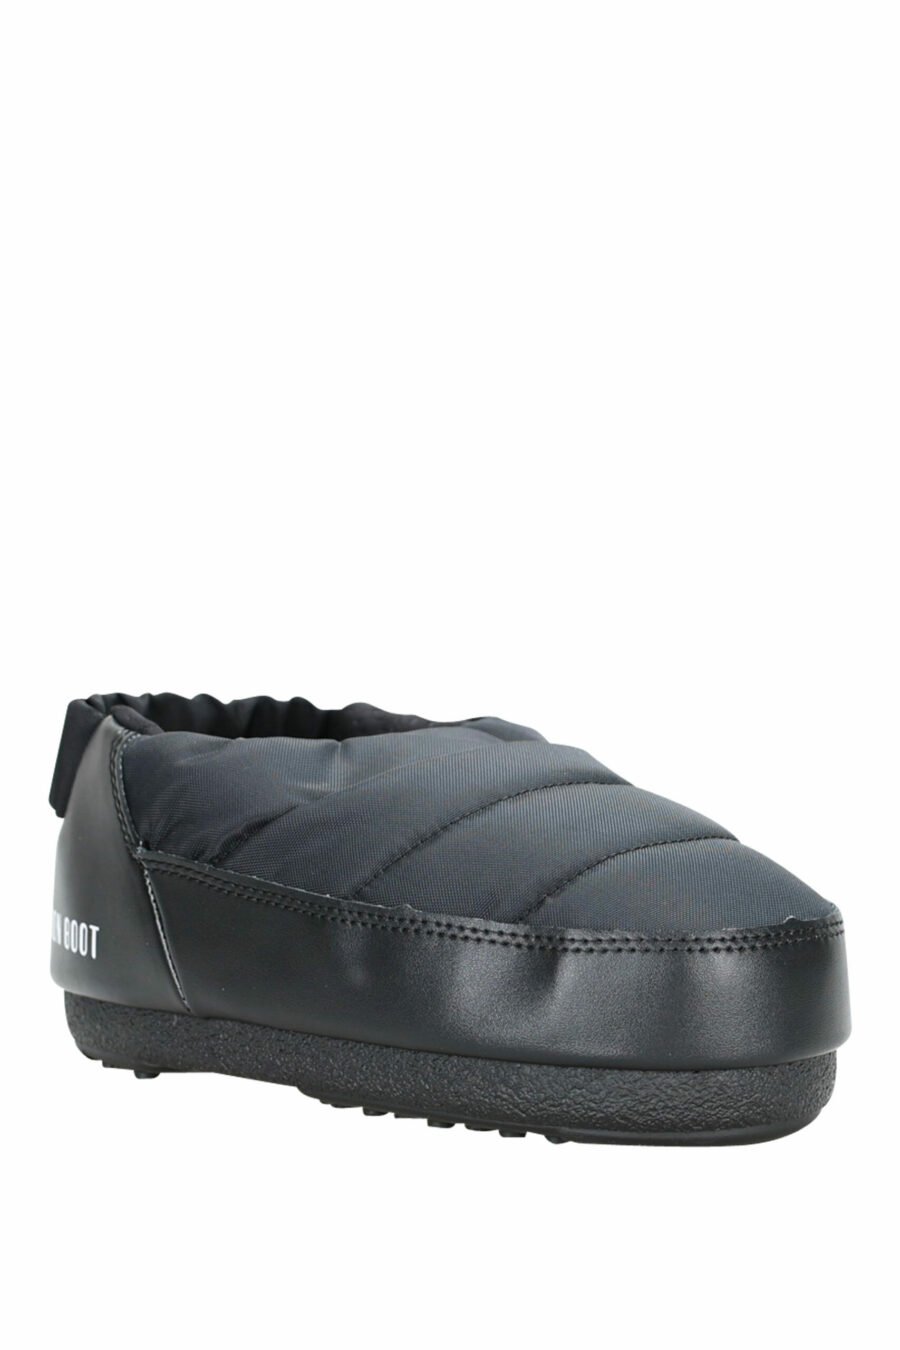 Sandales noires avec mini-logo blanc - 8050032004042 1 échelle